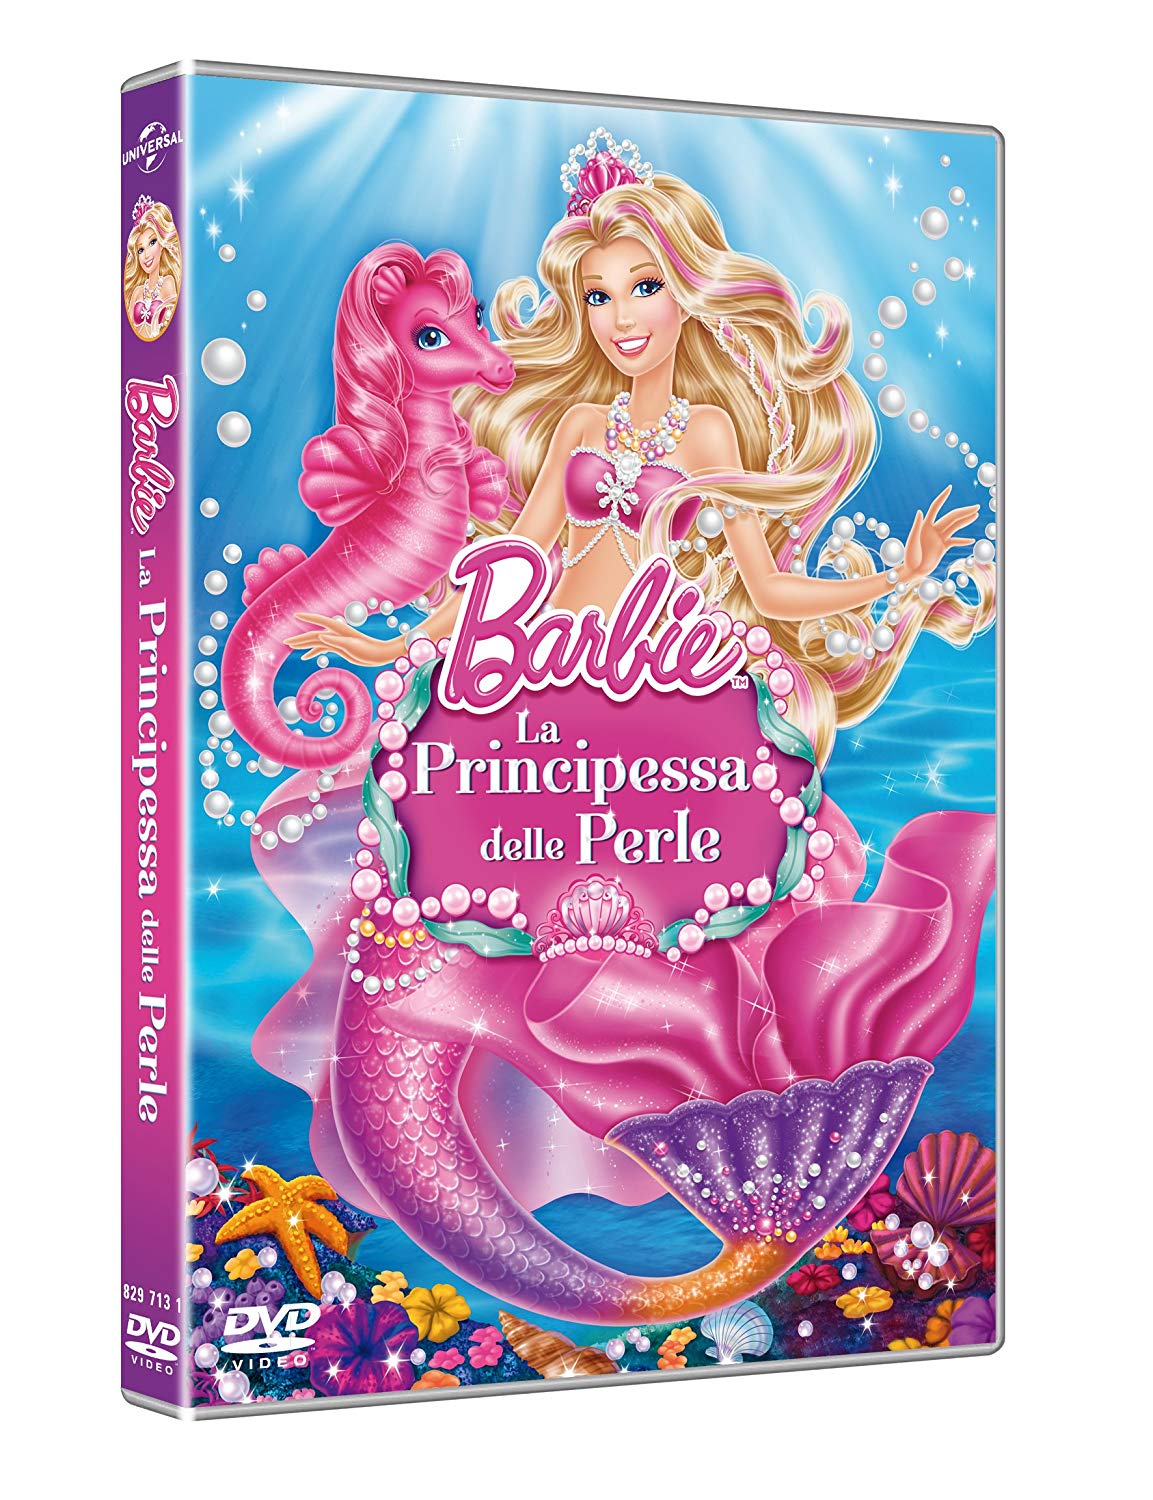 Barbie principessa delle perle DVD - Trova prezzo DVD Barbie la principessa delle perle - Barbie DVD